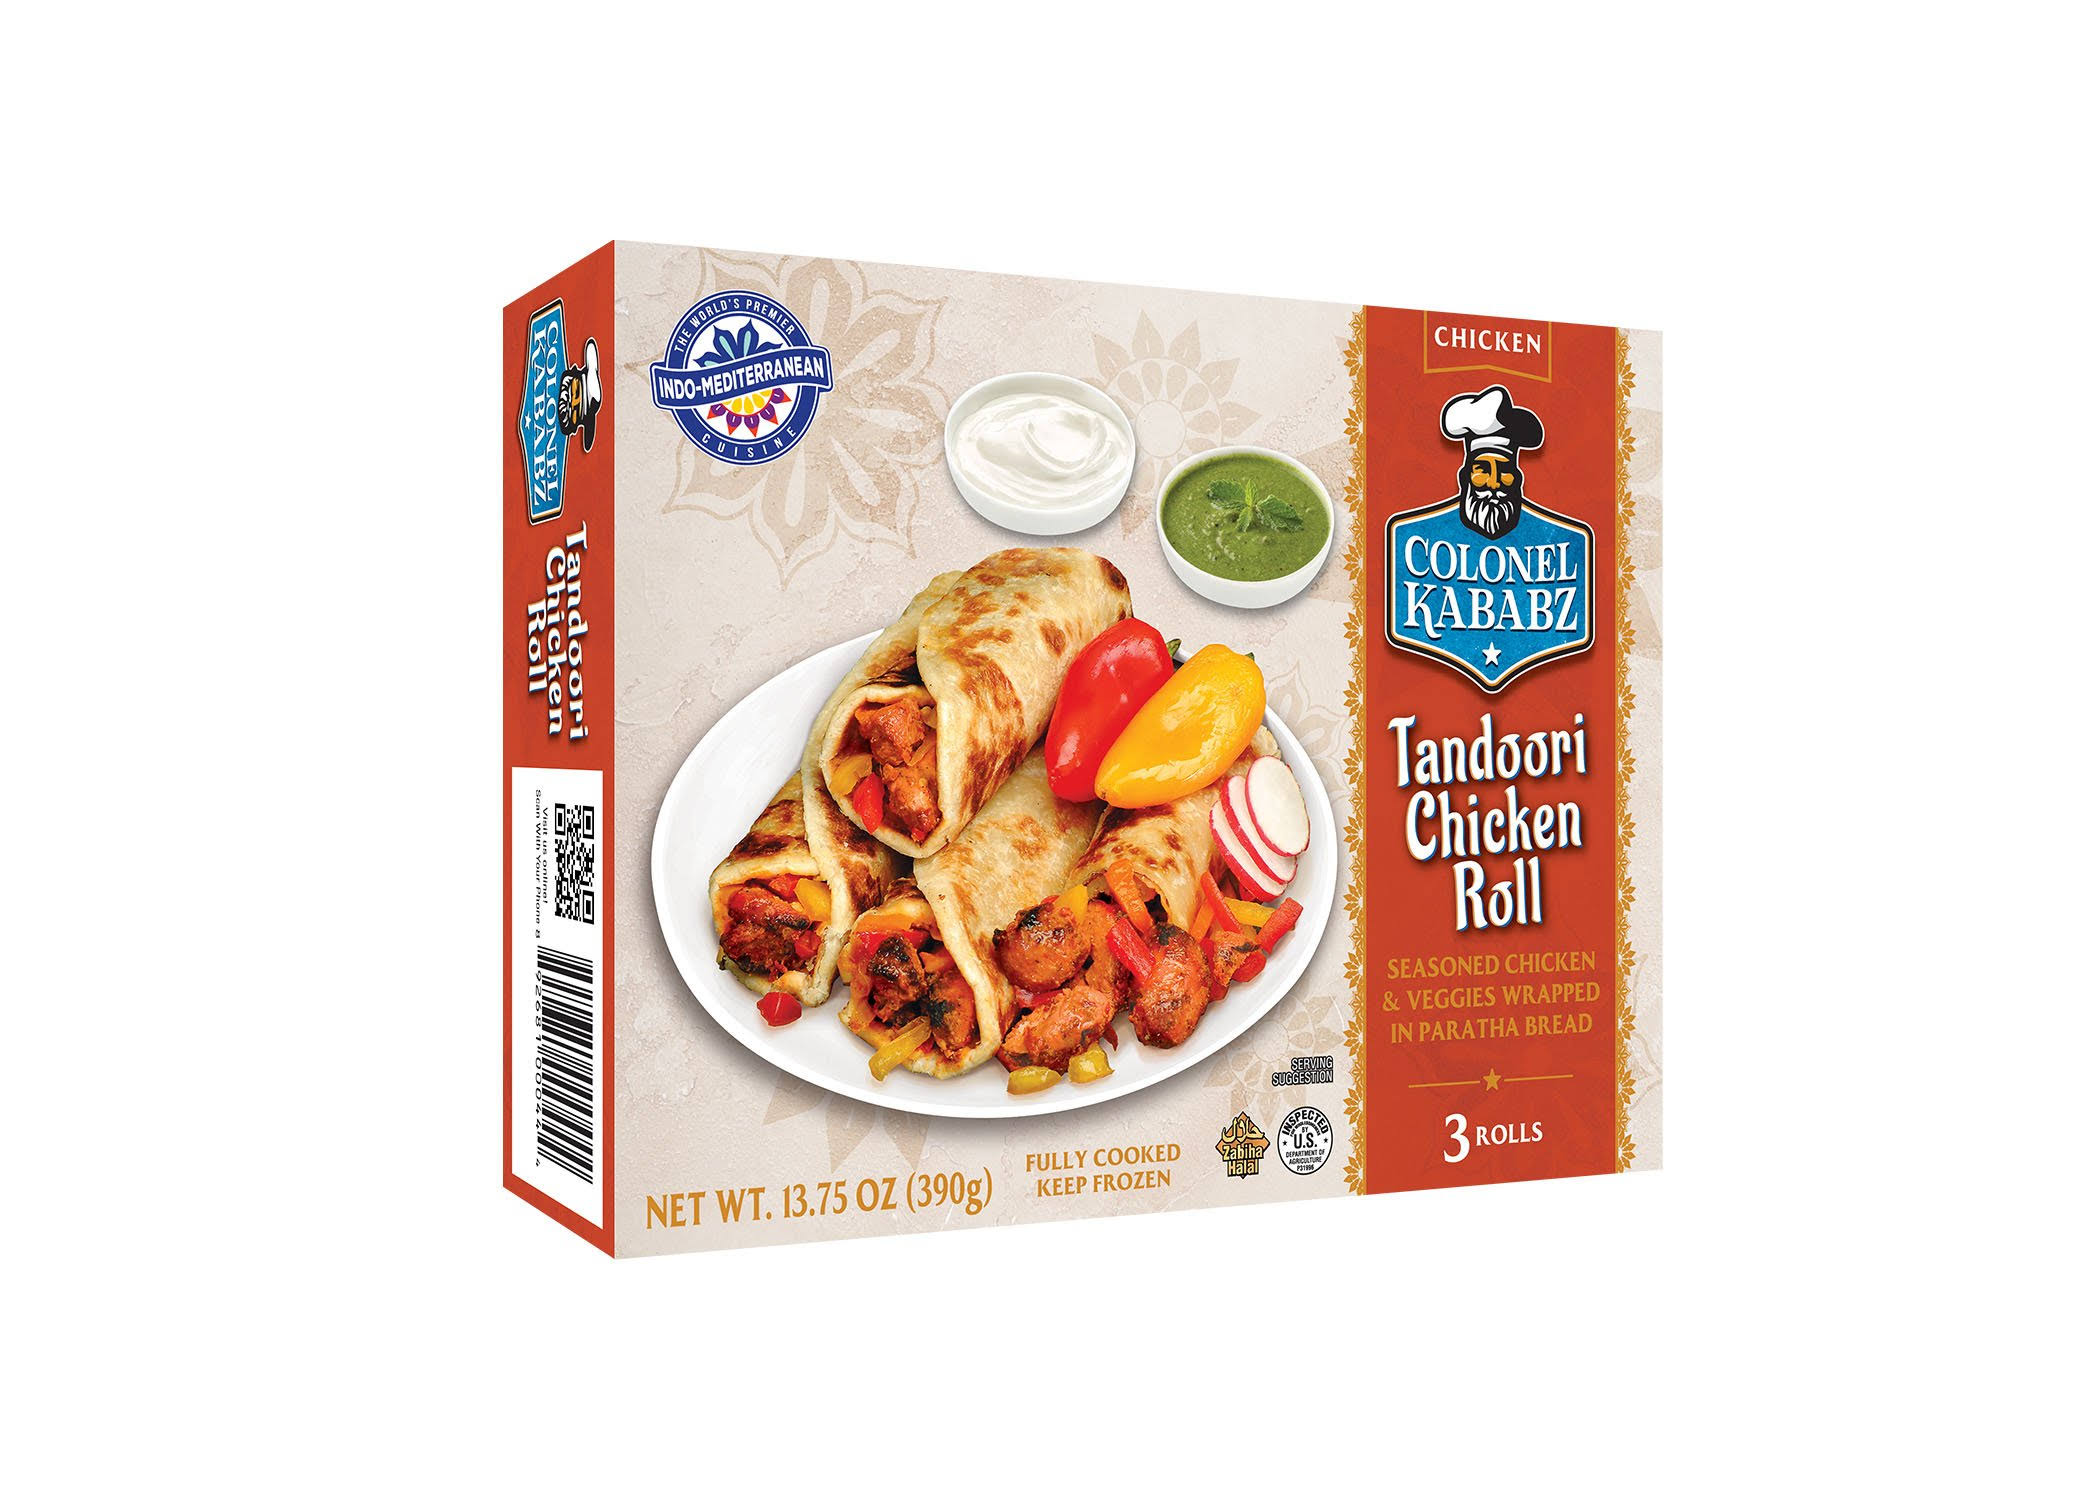 Colonel Kababz Chicken Rolls - Tandoori, 13.75oz